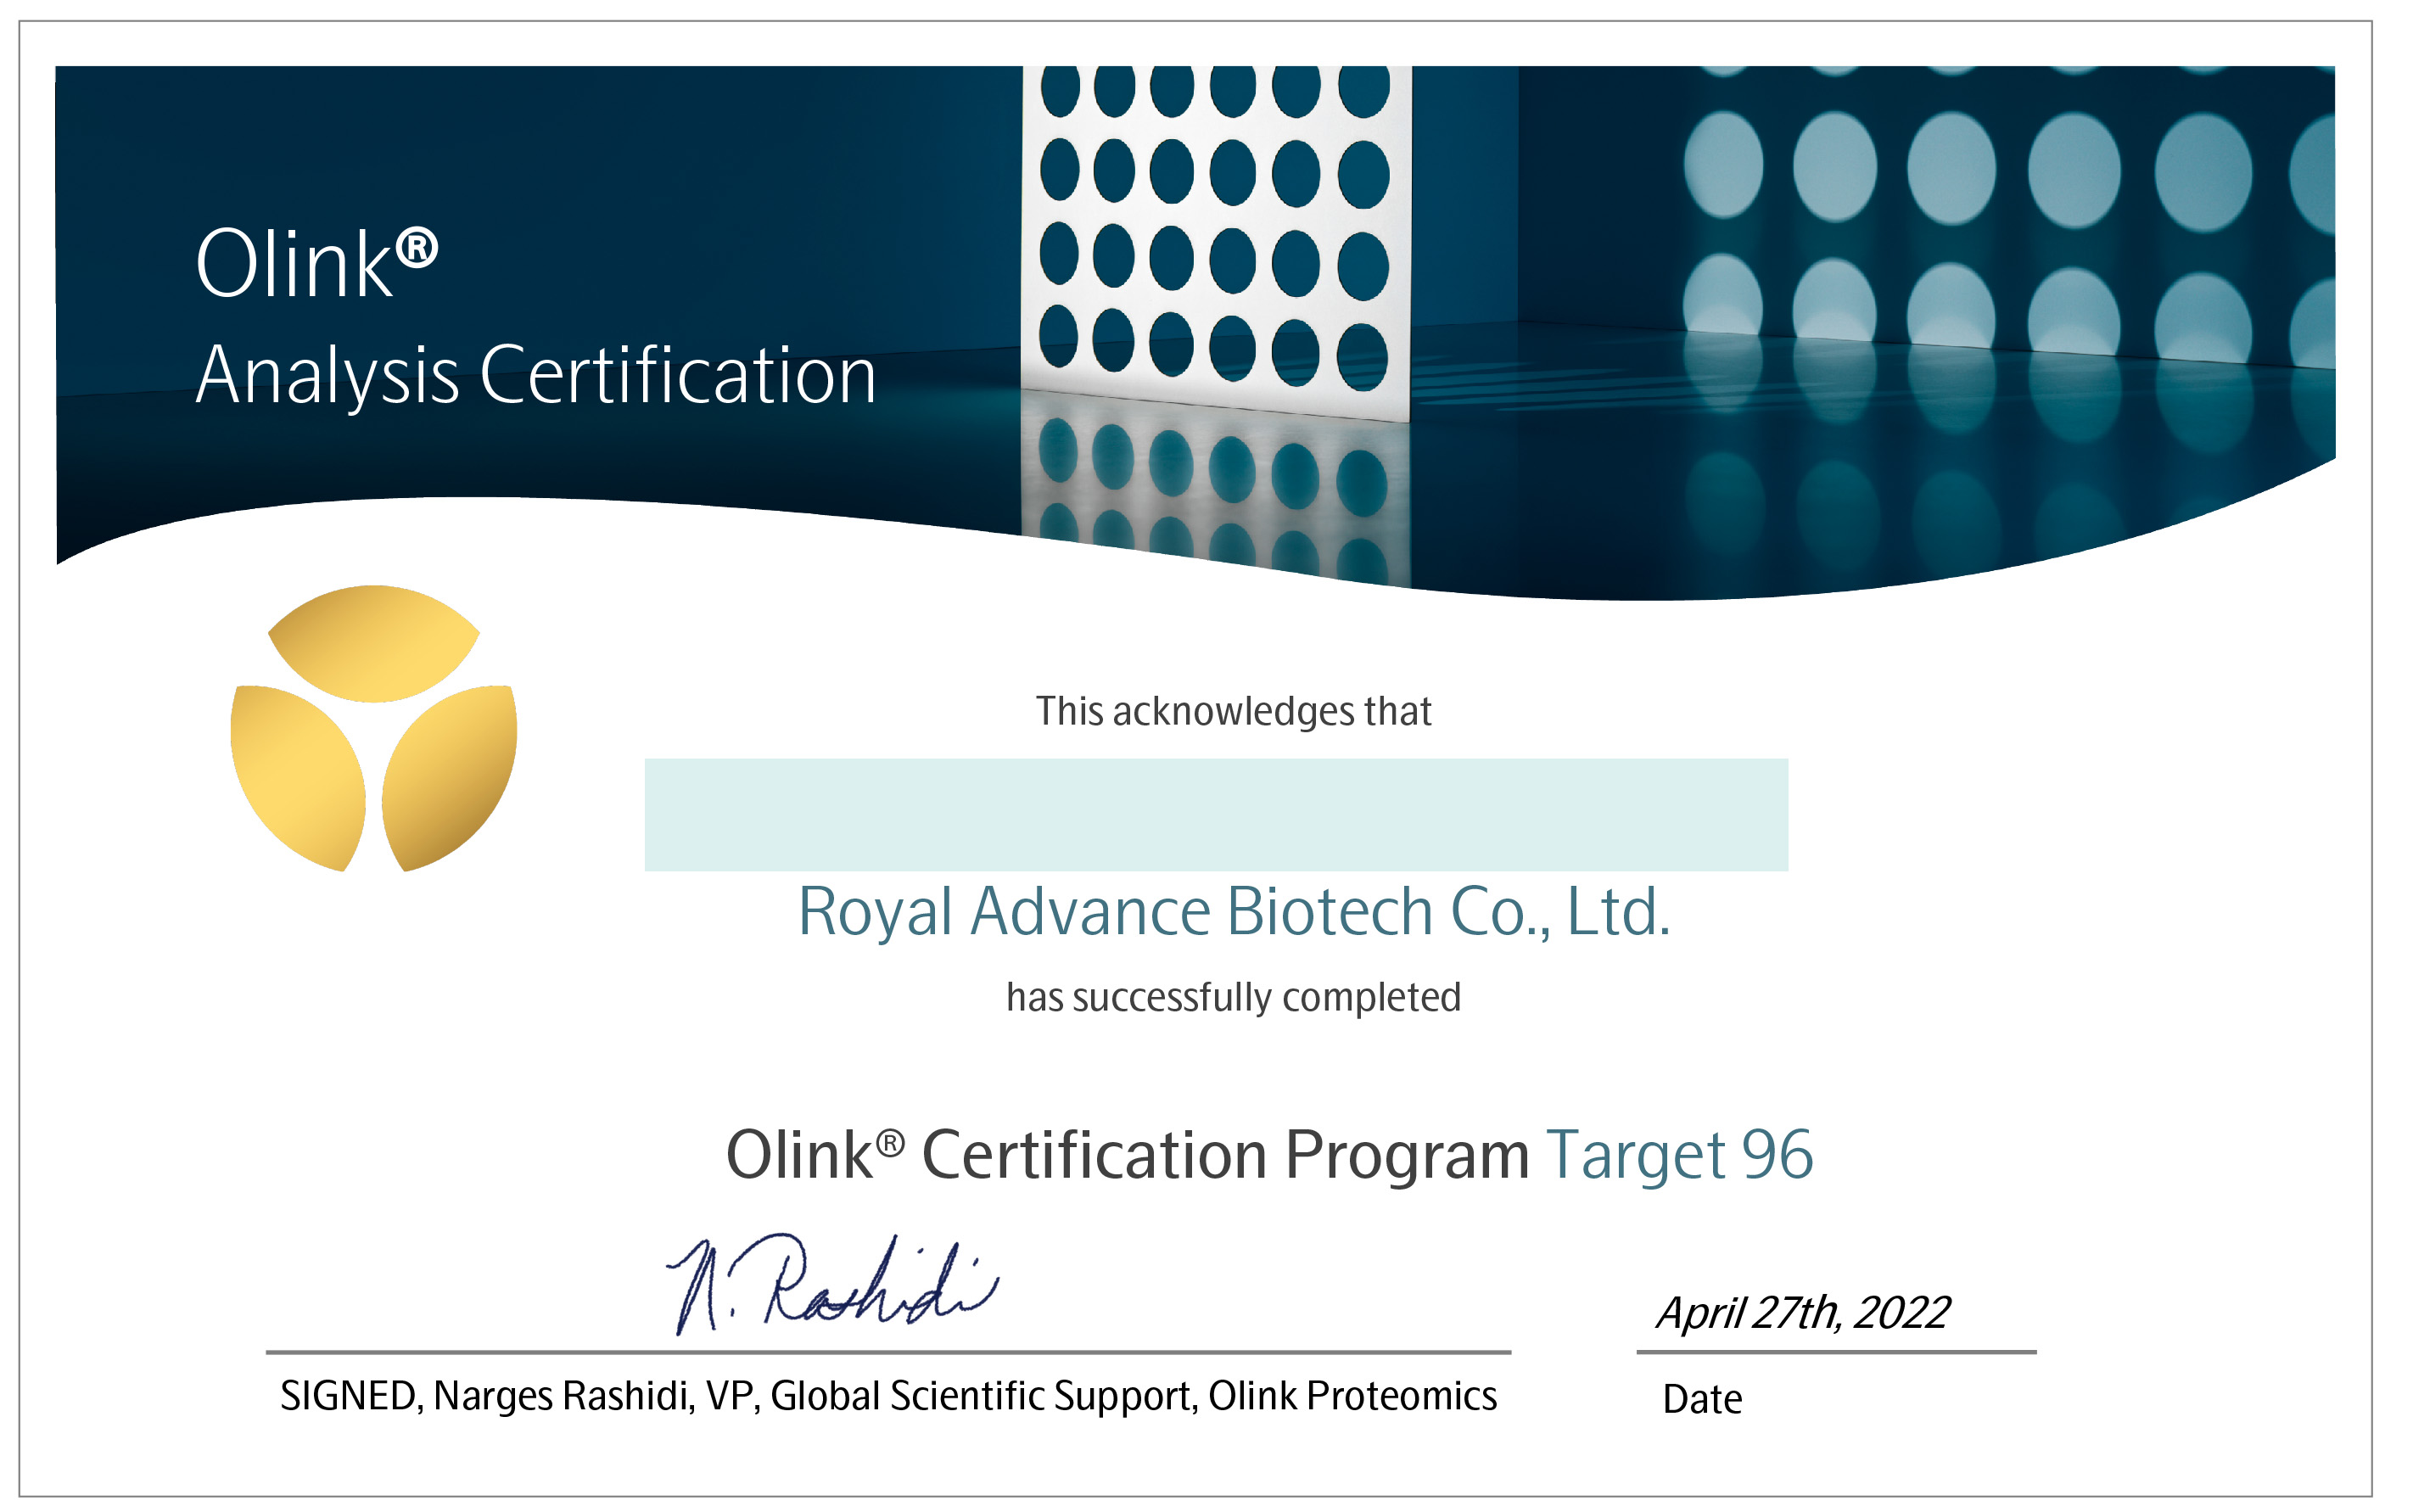 蛋白检测服务子公司御领生物获得Olink Service Provider Gold Badge